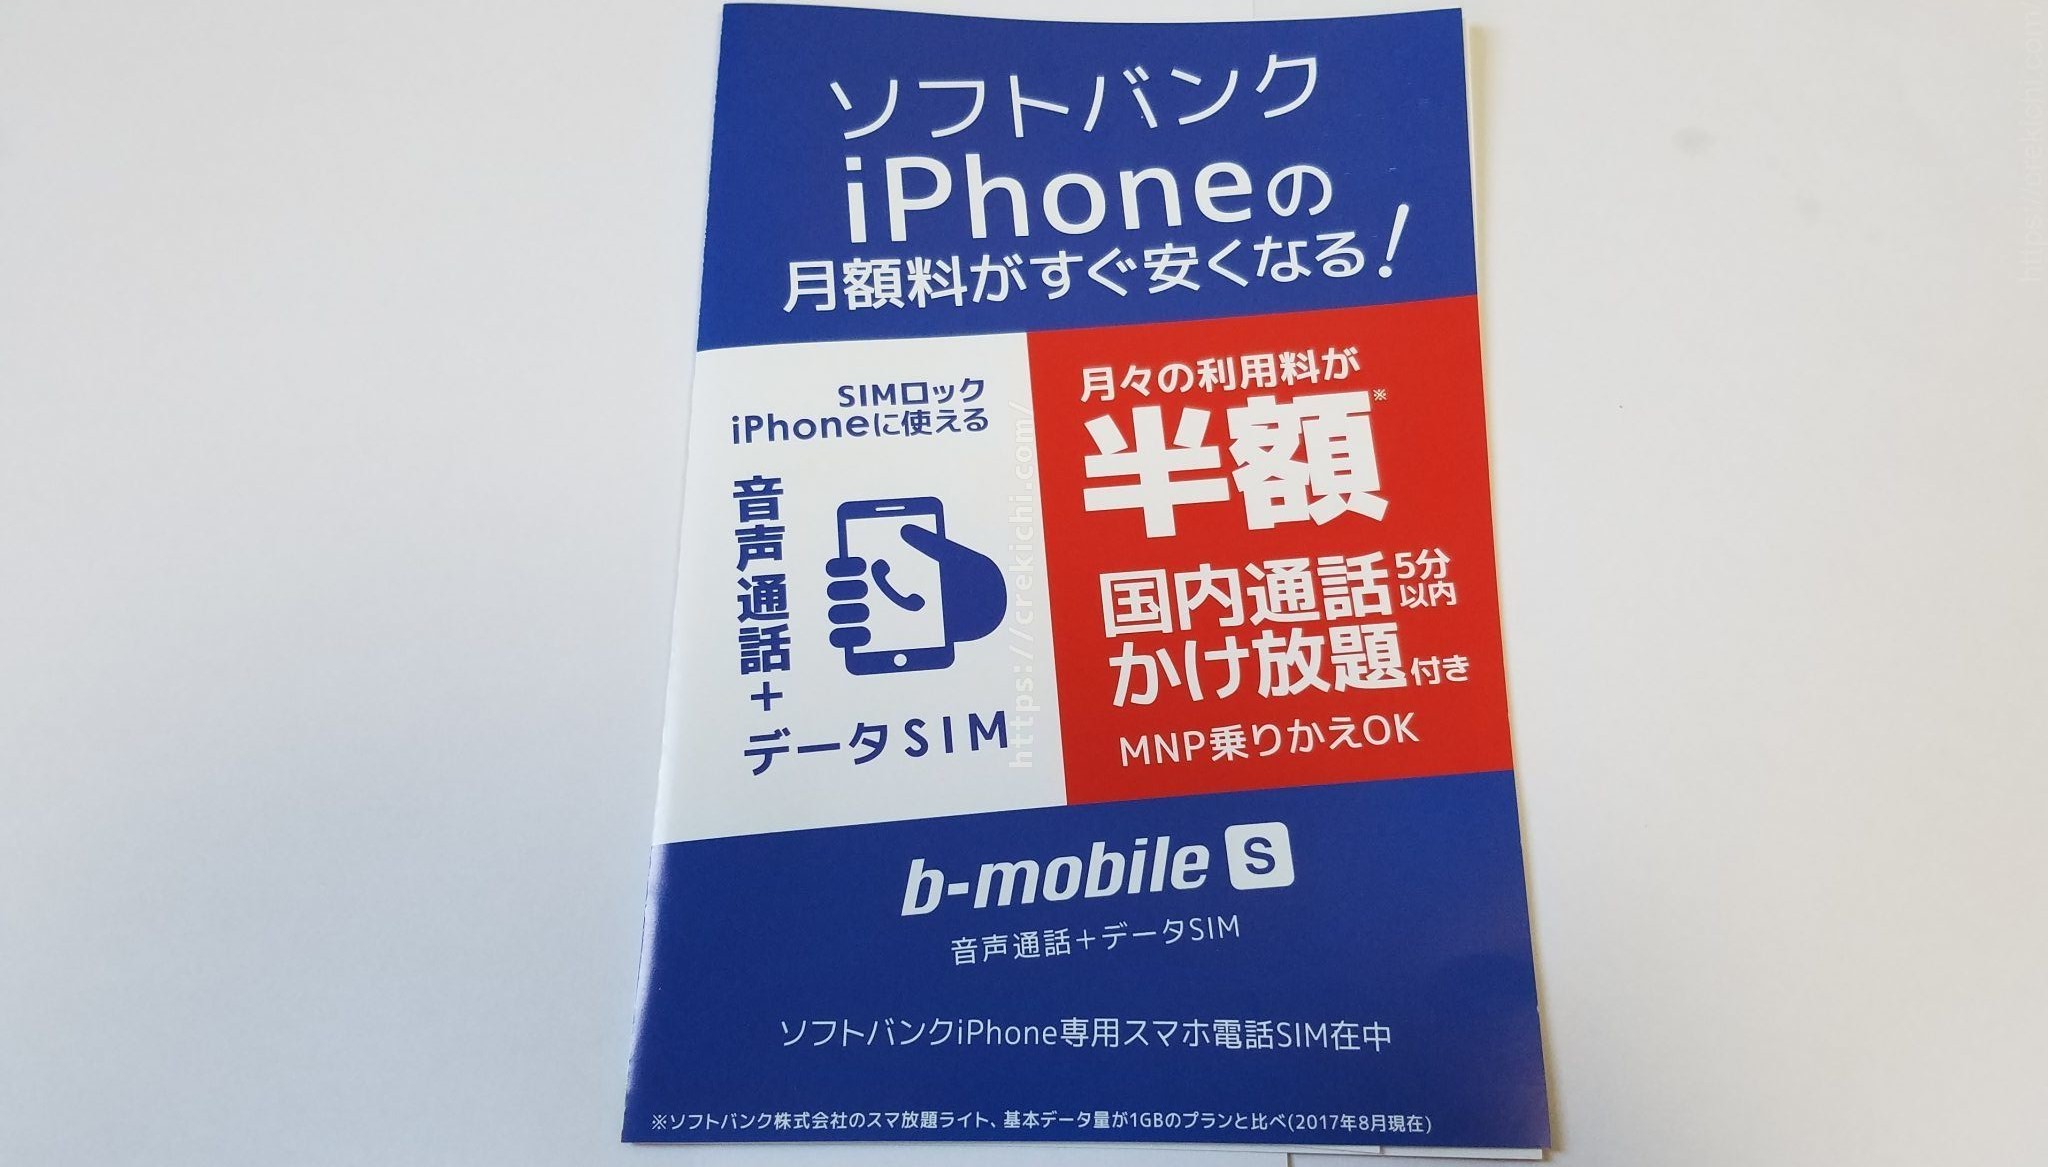 b-mobile S スマホ電話SIM